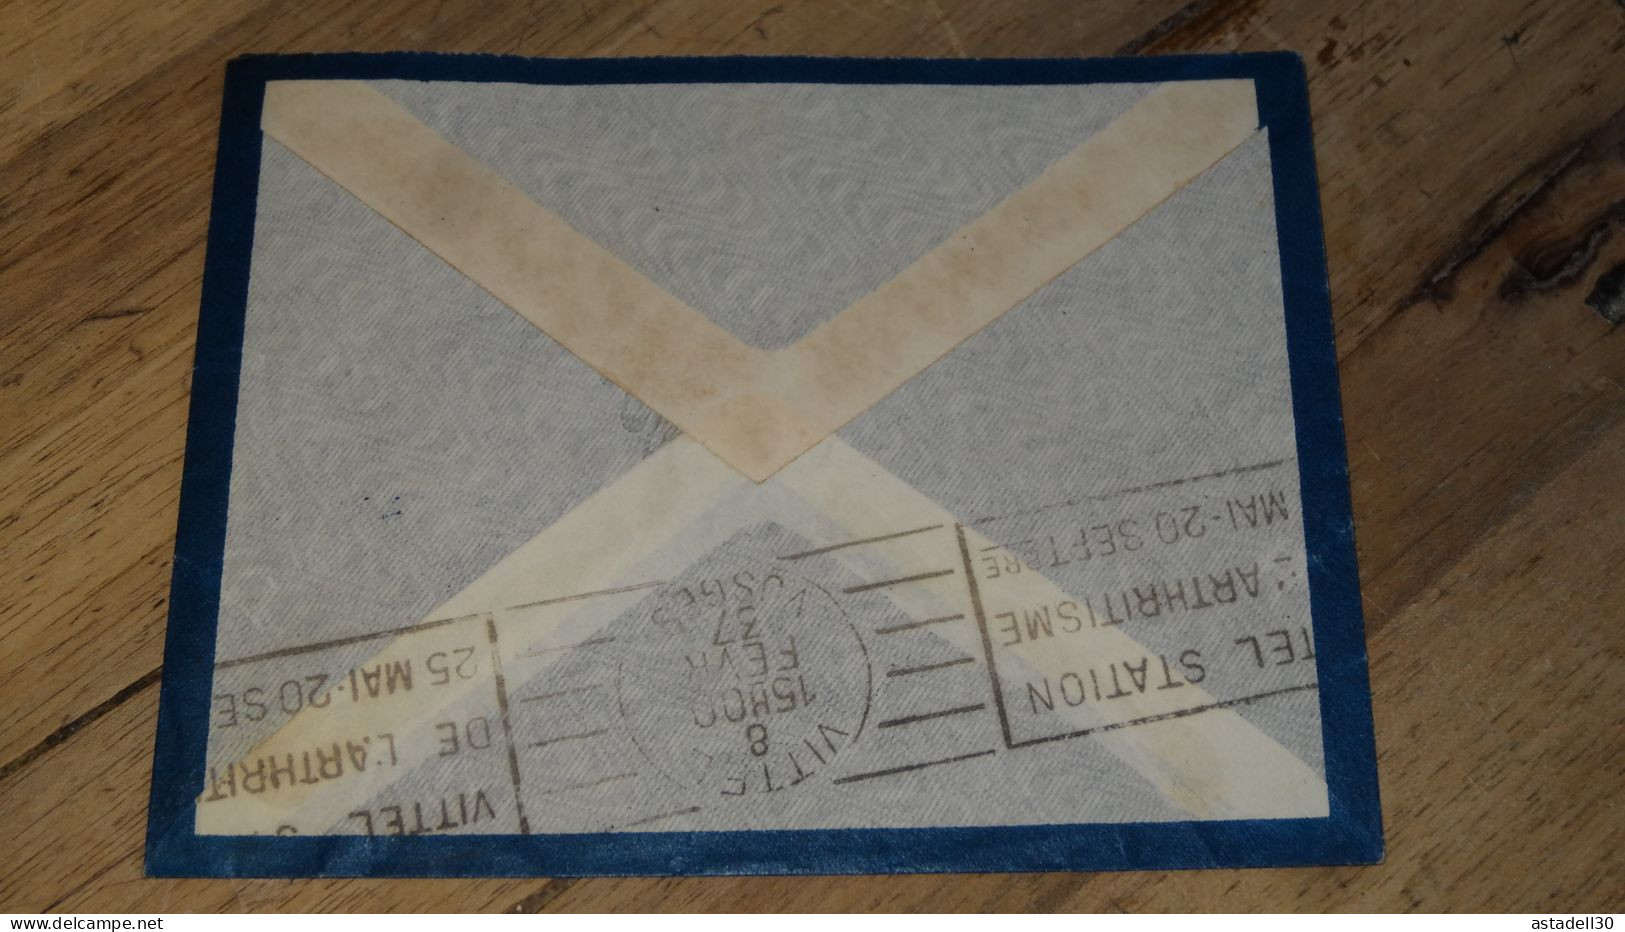 Enveloppe Entier Postal INDOCHINE, Par Avion, Saigon 1937 ......... ..... 240424 ....... CL6-3a - Cartas & Documentos